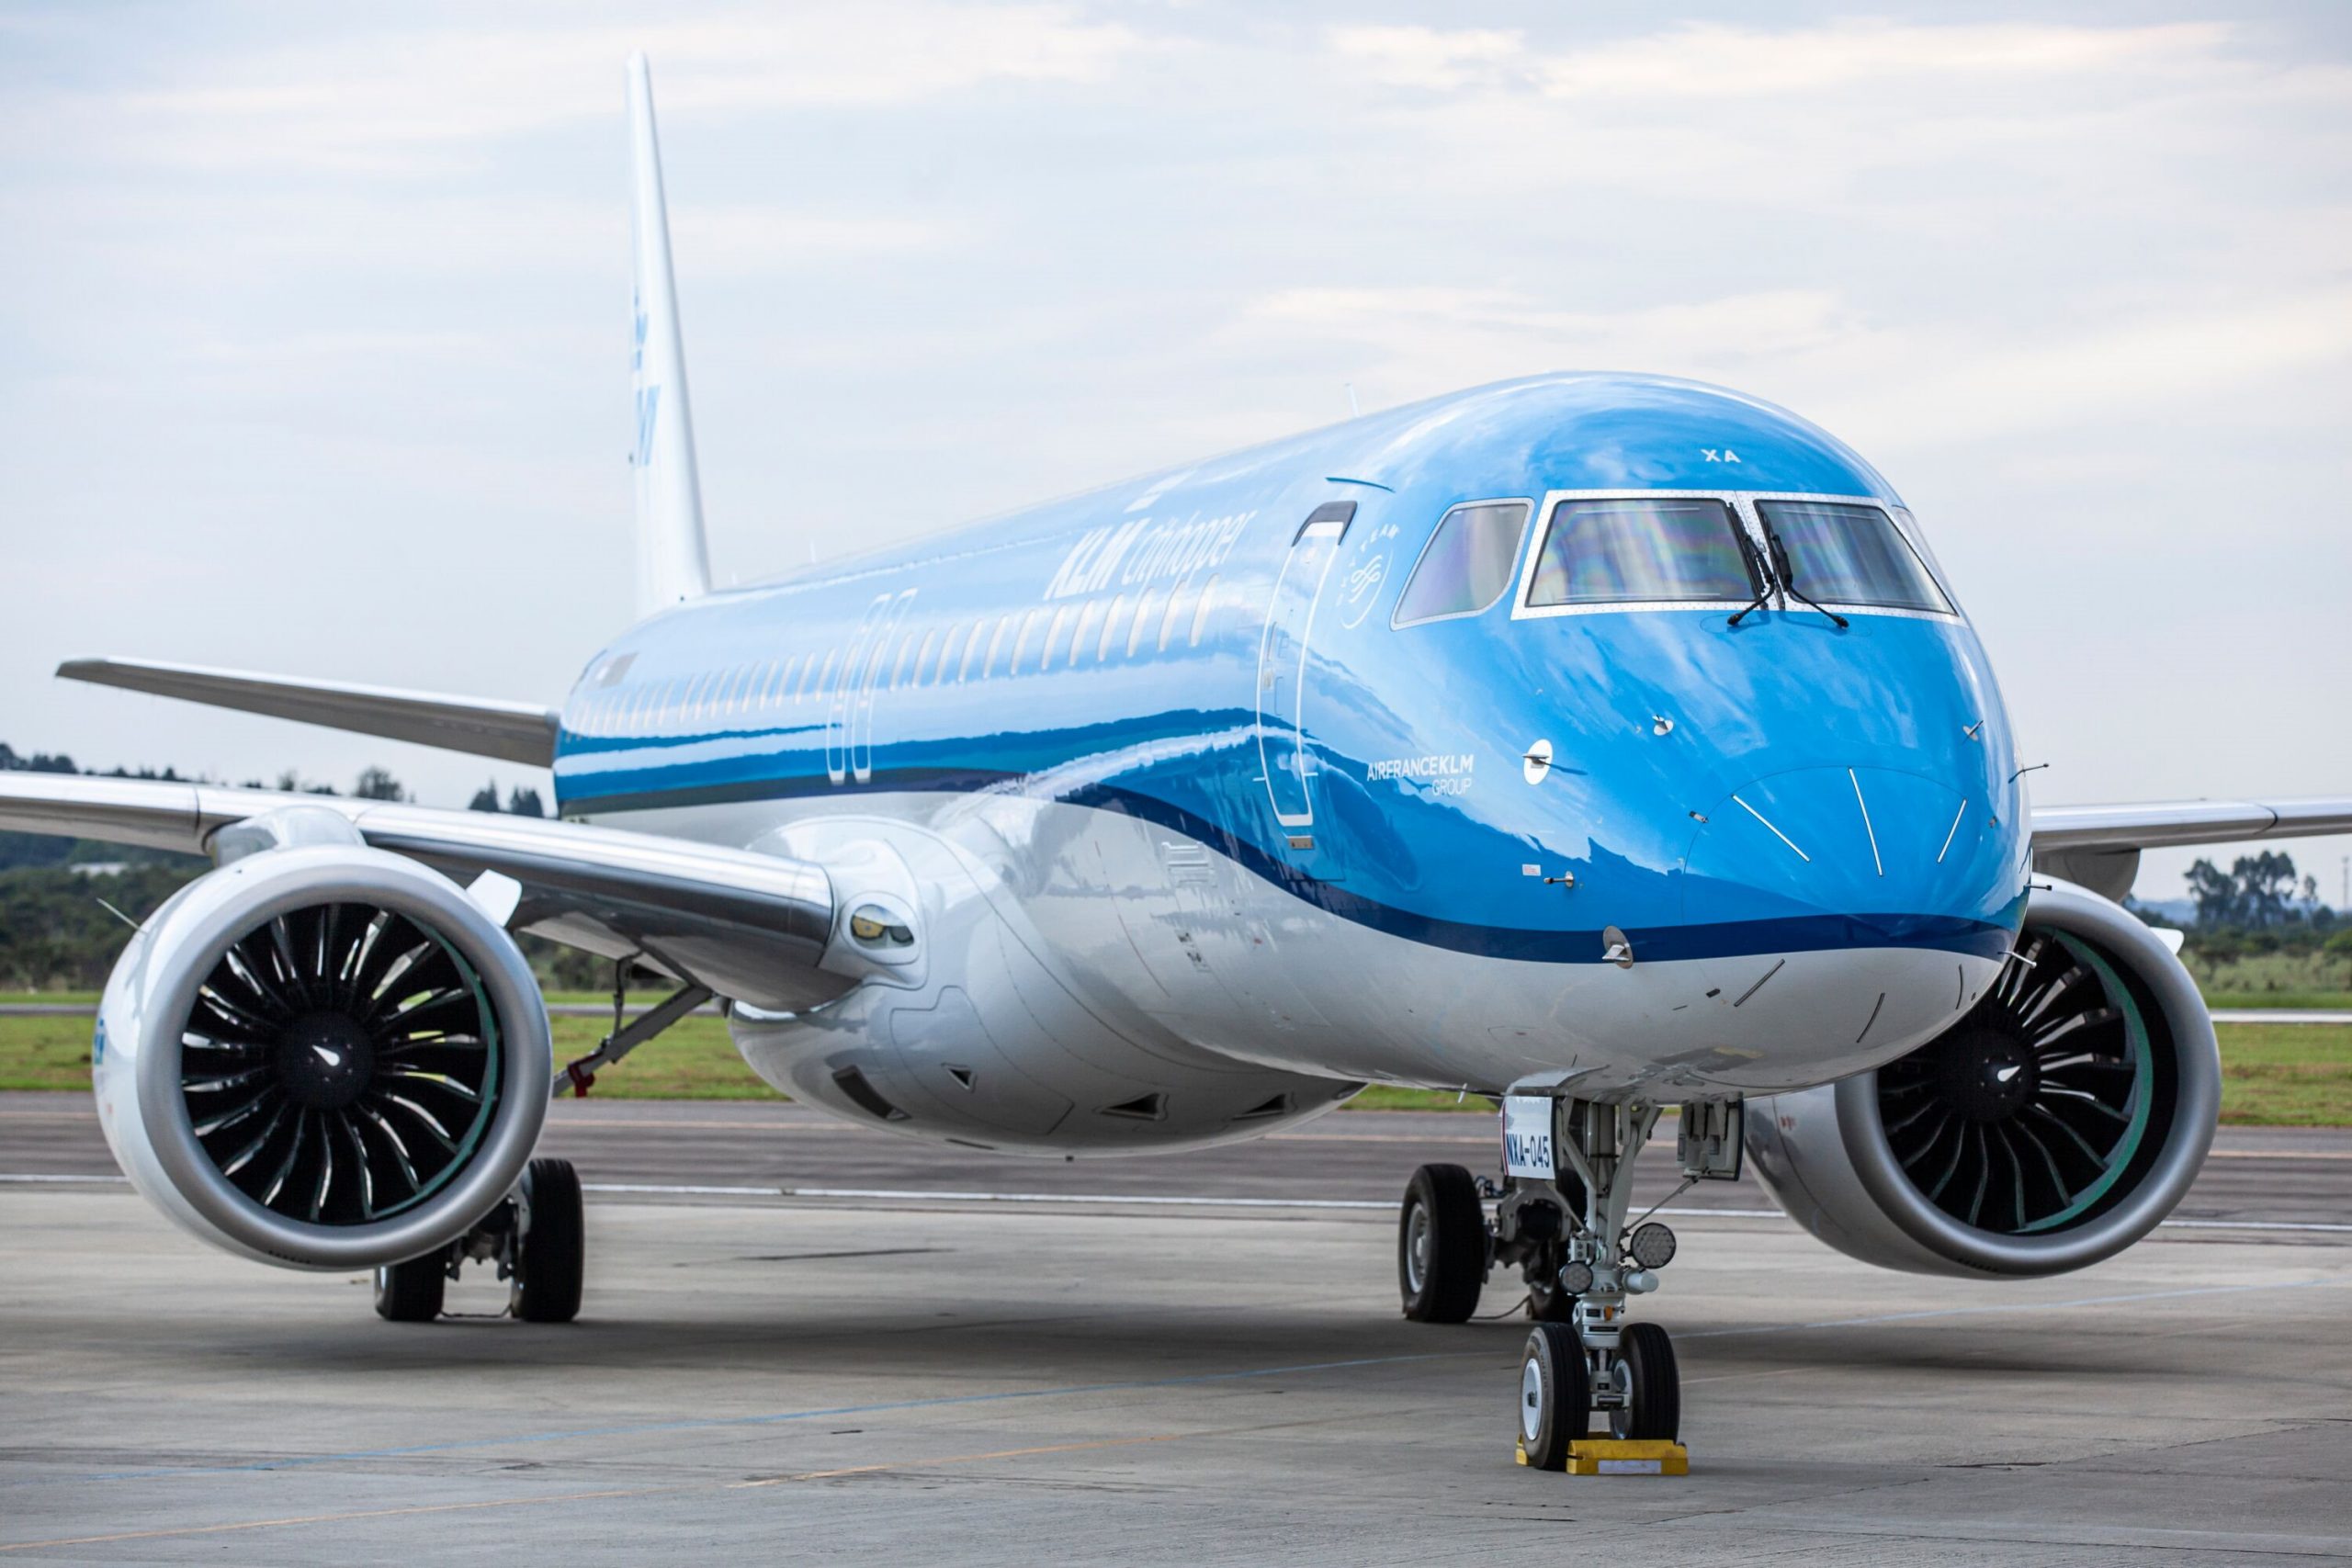 KLM poleci z Katowic. To nowy przewoźnik na tym lotnisku!